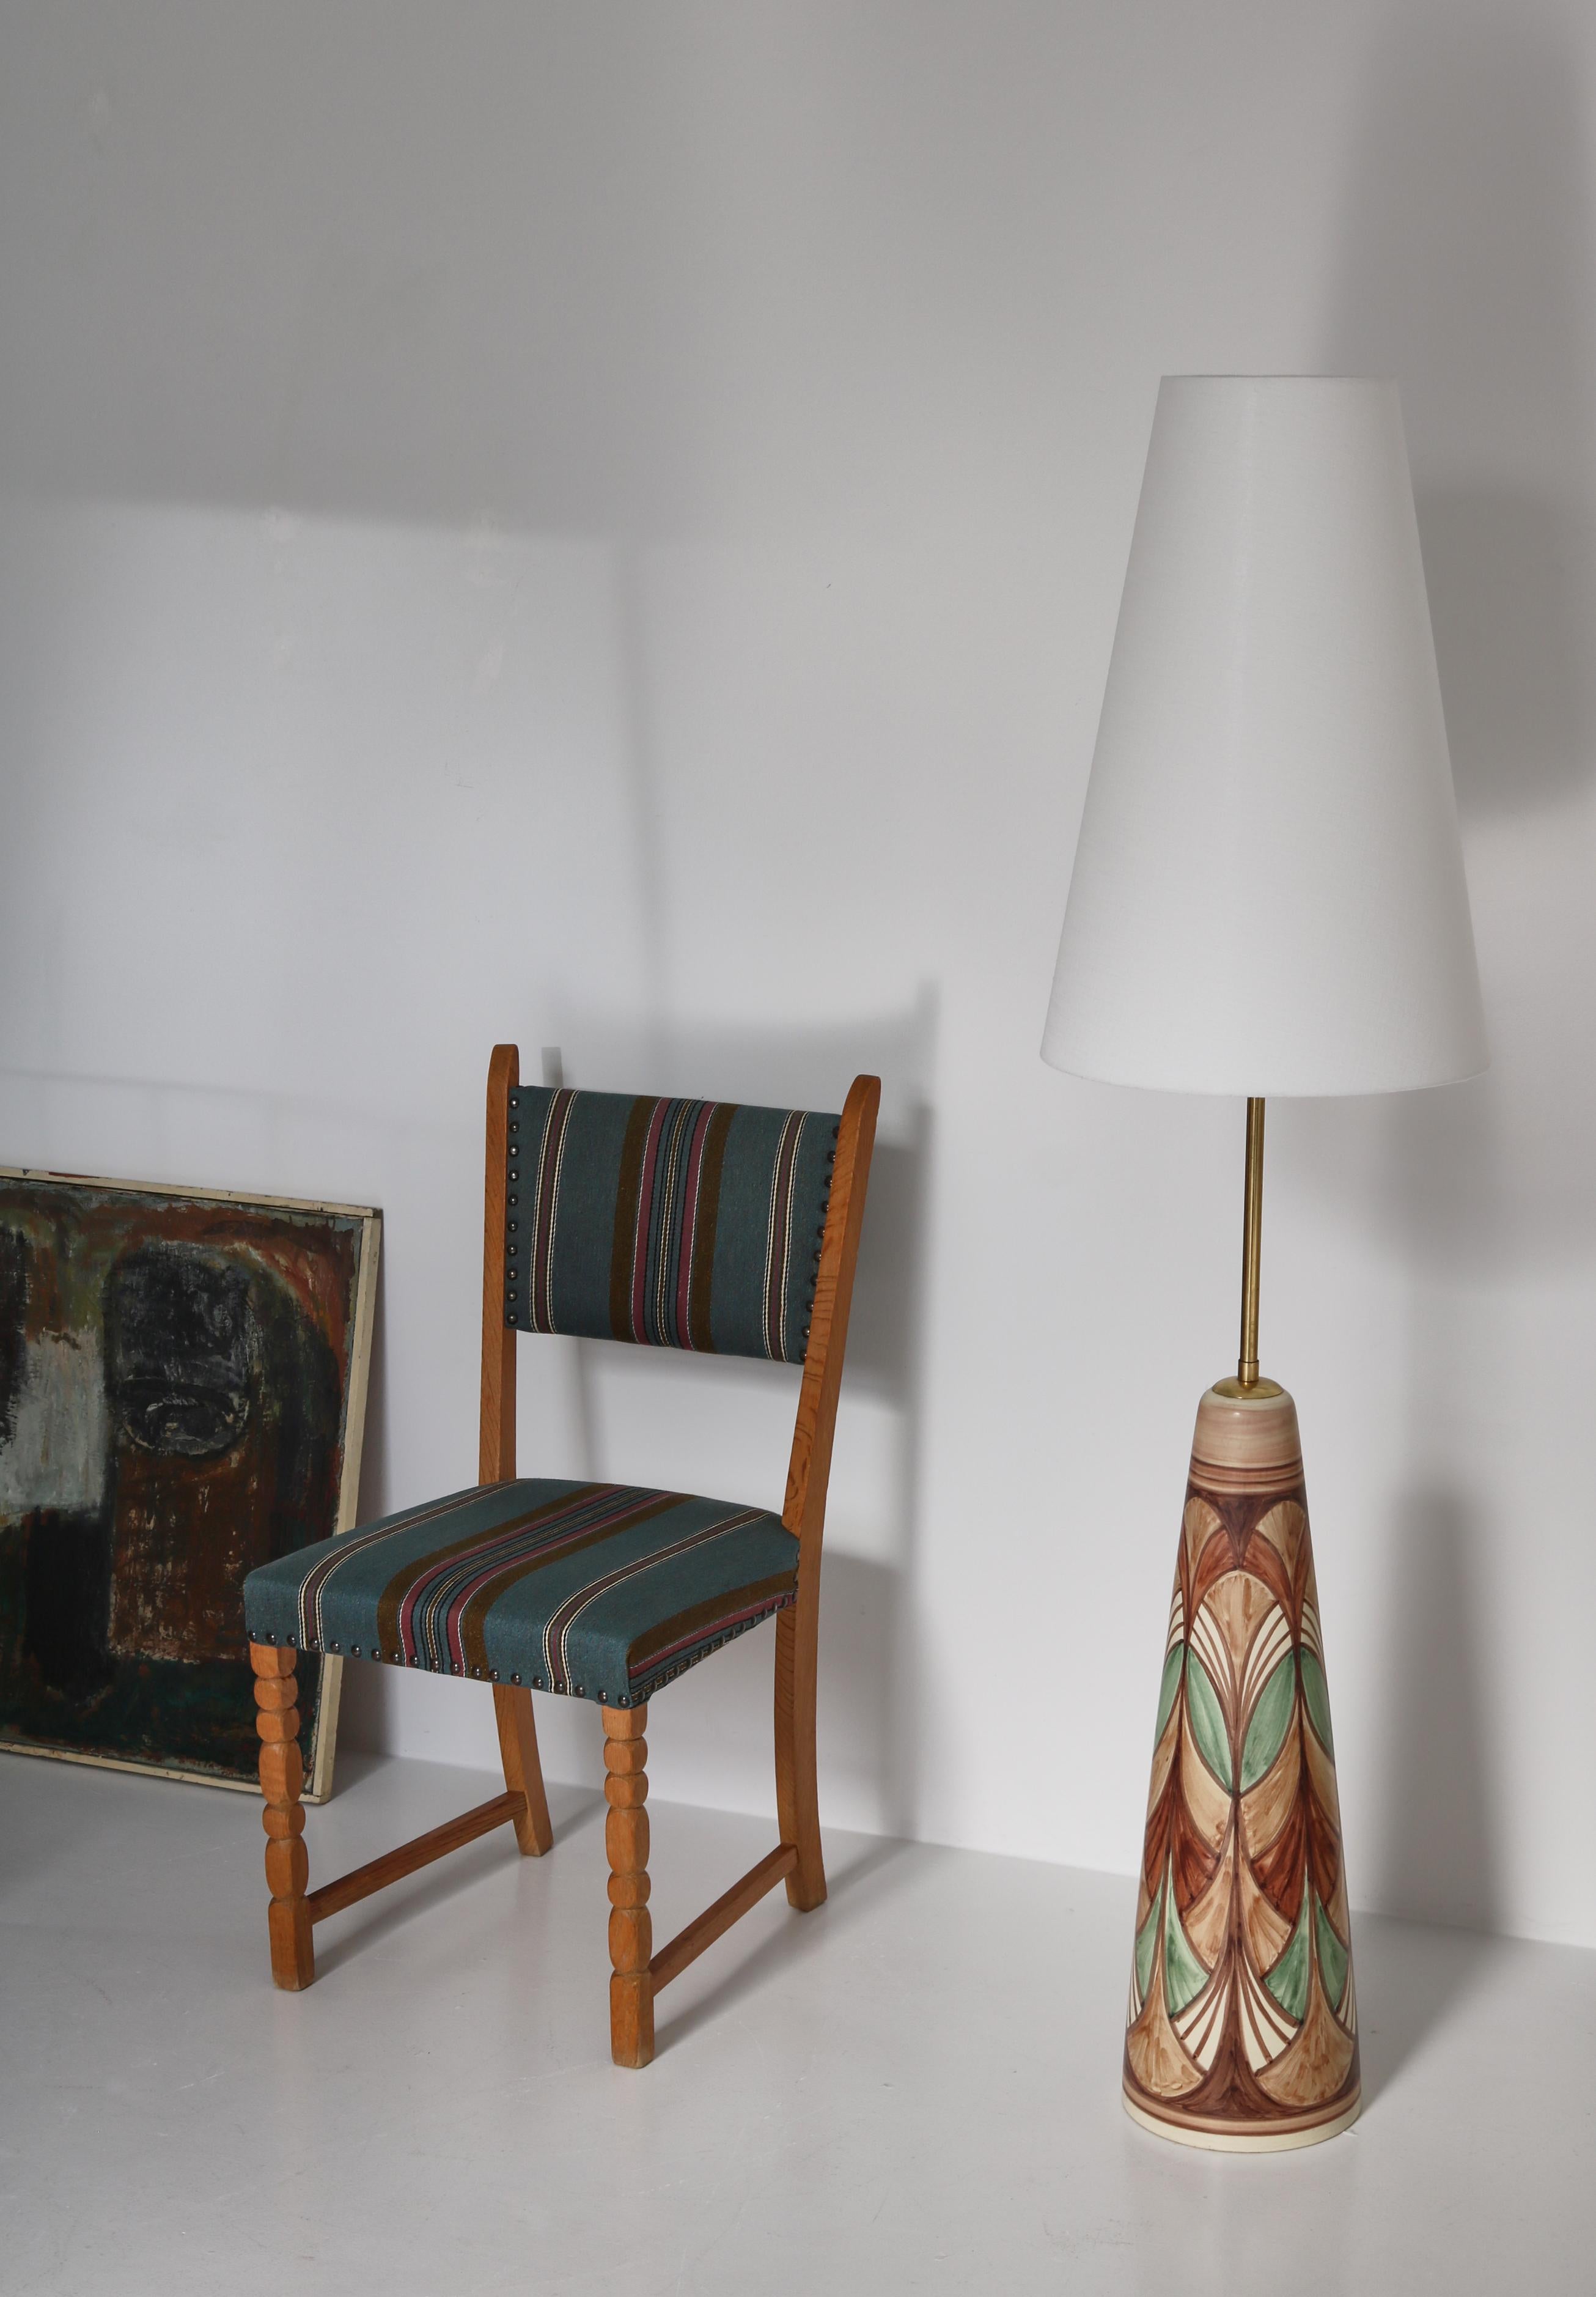 1960s Side Chair in Oak & Wool Fabric by Henry Kjærnulf, Danish Modern For Sale 8